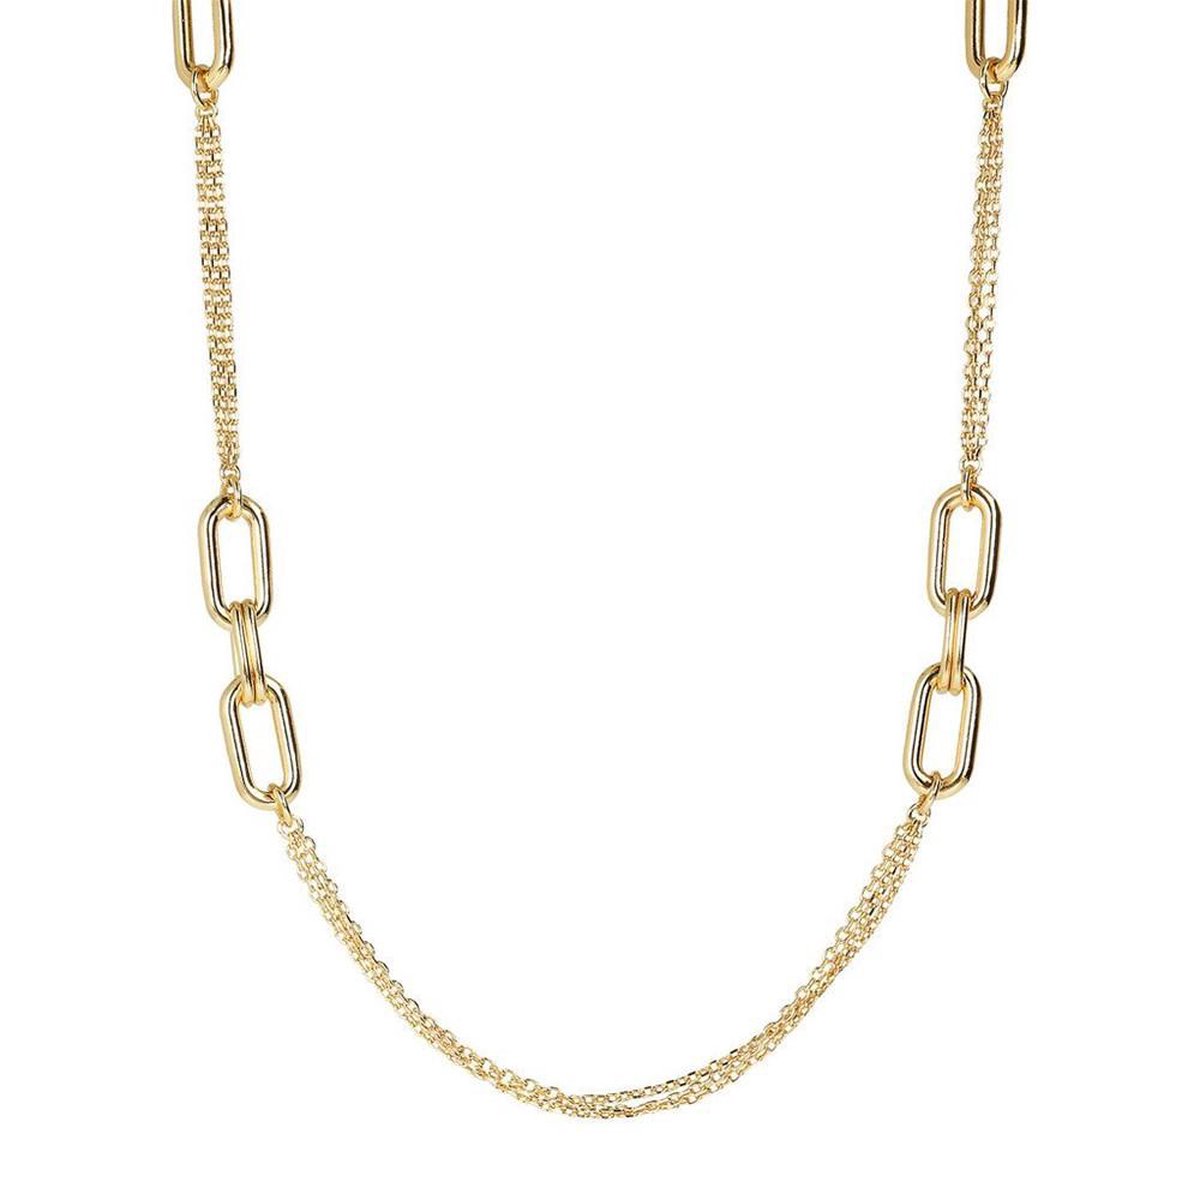 Purezza Chanel necklace with oval element WSBZ01619YY